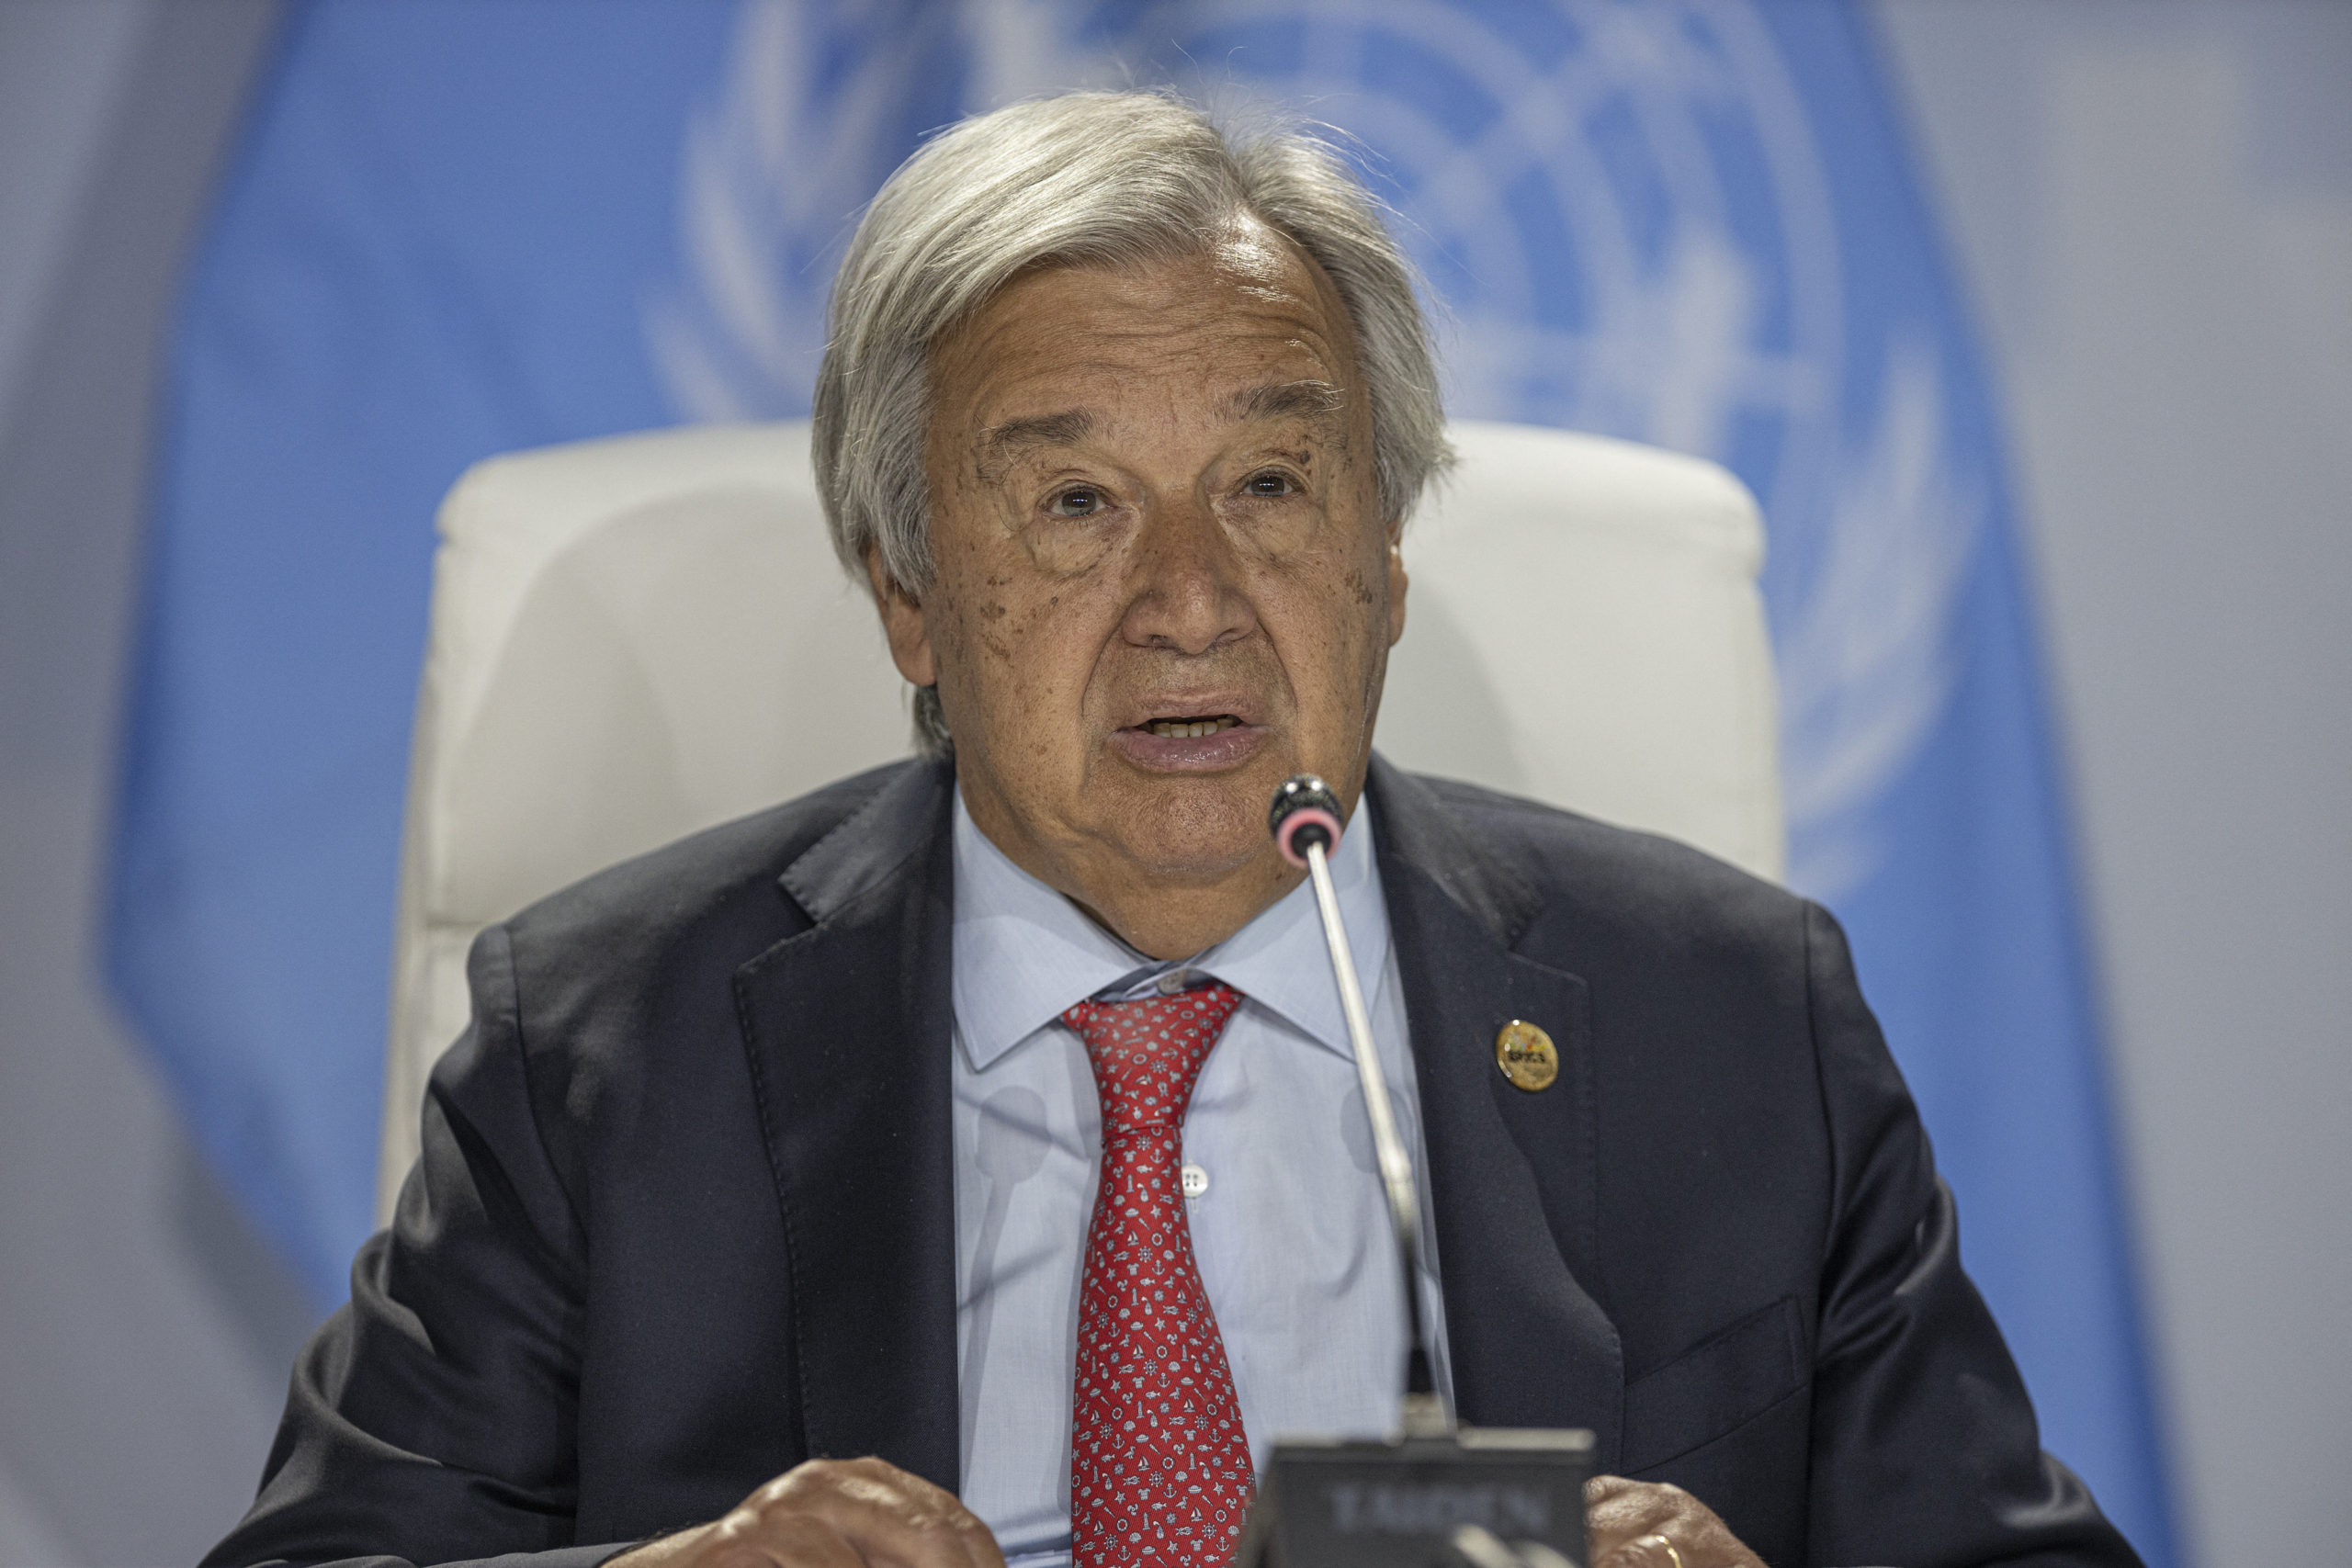 ENSZ-főtitkár: Még elkerülhető a klímakáosz legszörnyűbb része, de fogytán az idő